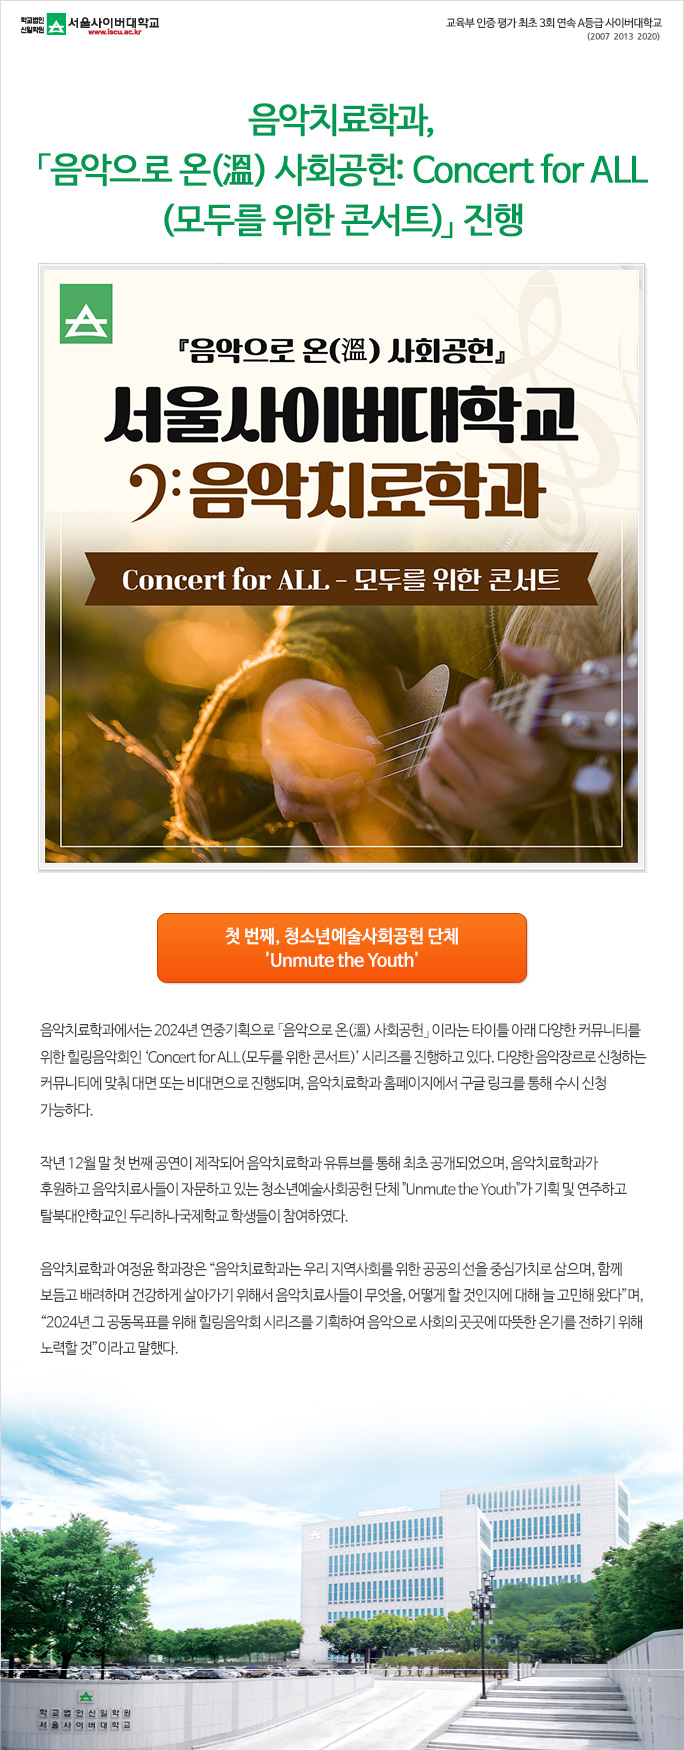 음악치료학과, 「음악으로 온(溫) 사회공헌: Concert for ALL(모두를 위한 콘서트)」 진행